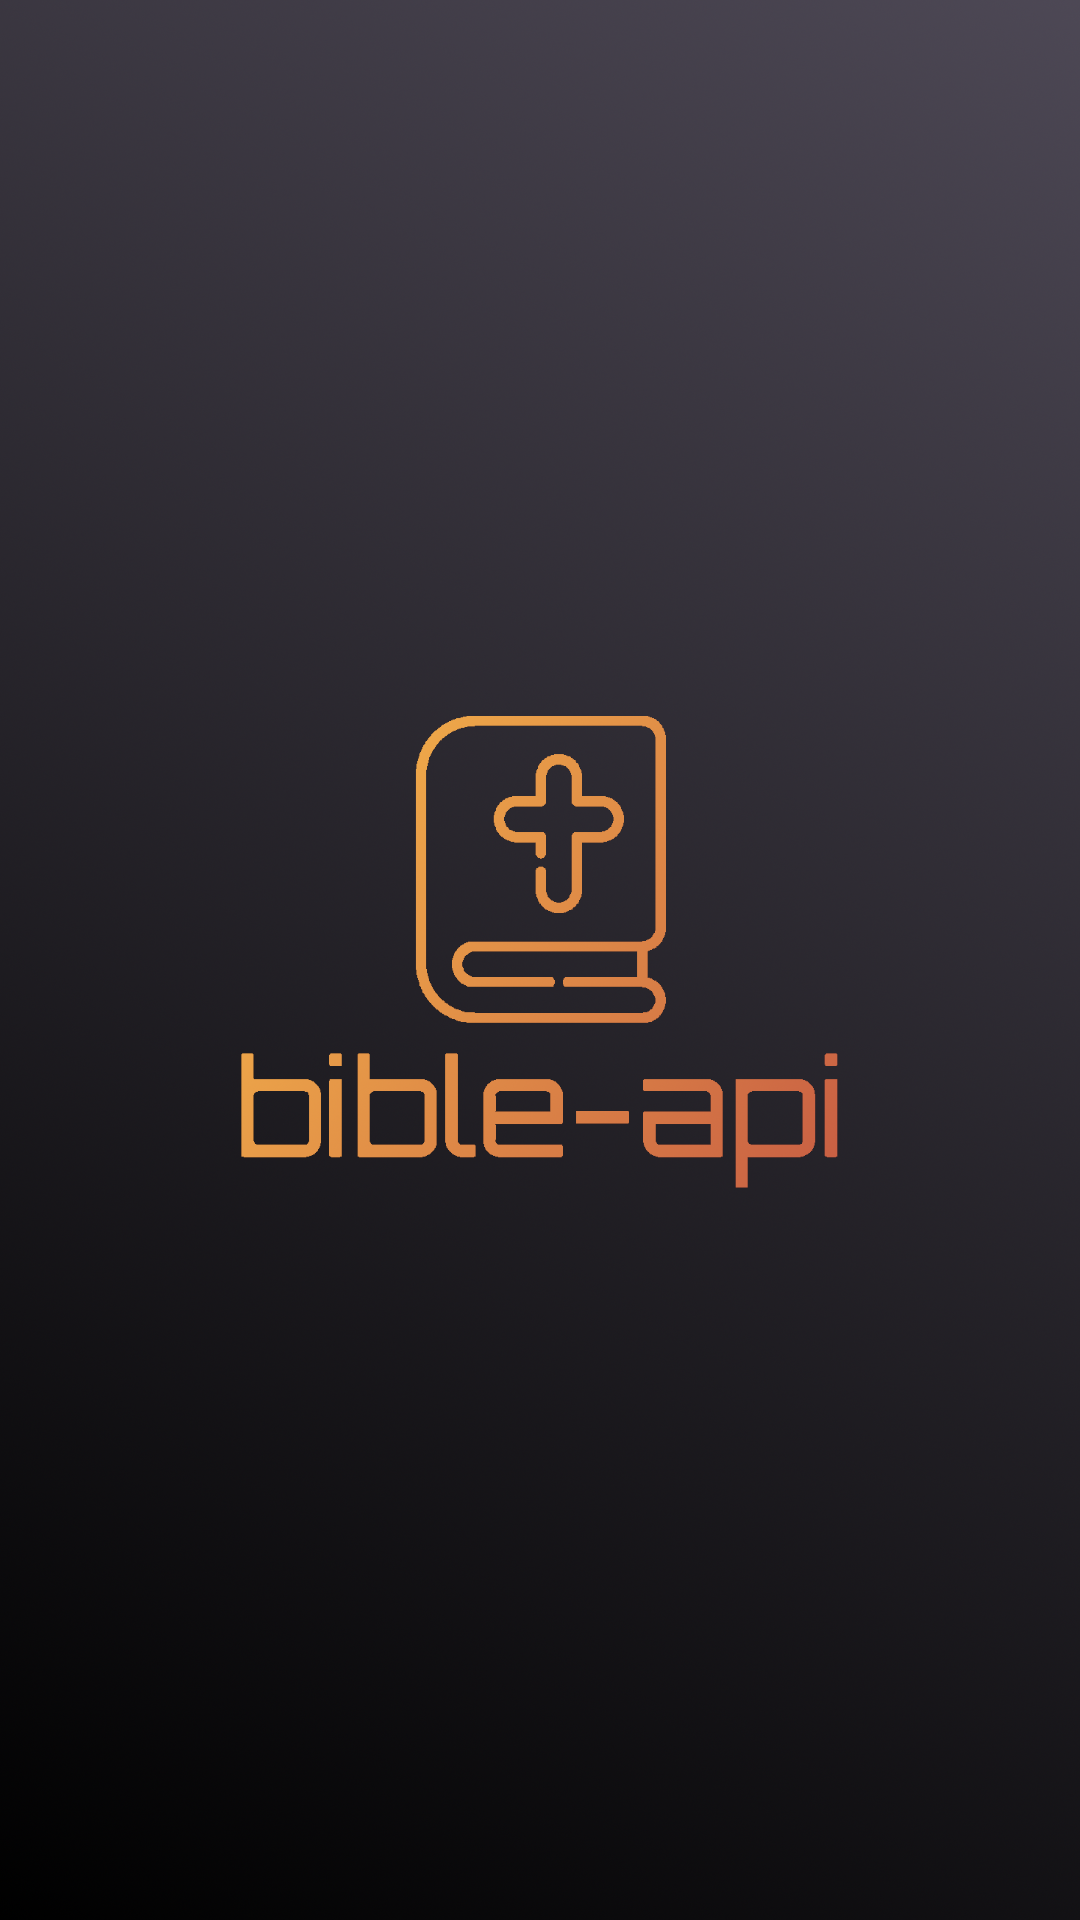 bible-api logo